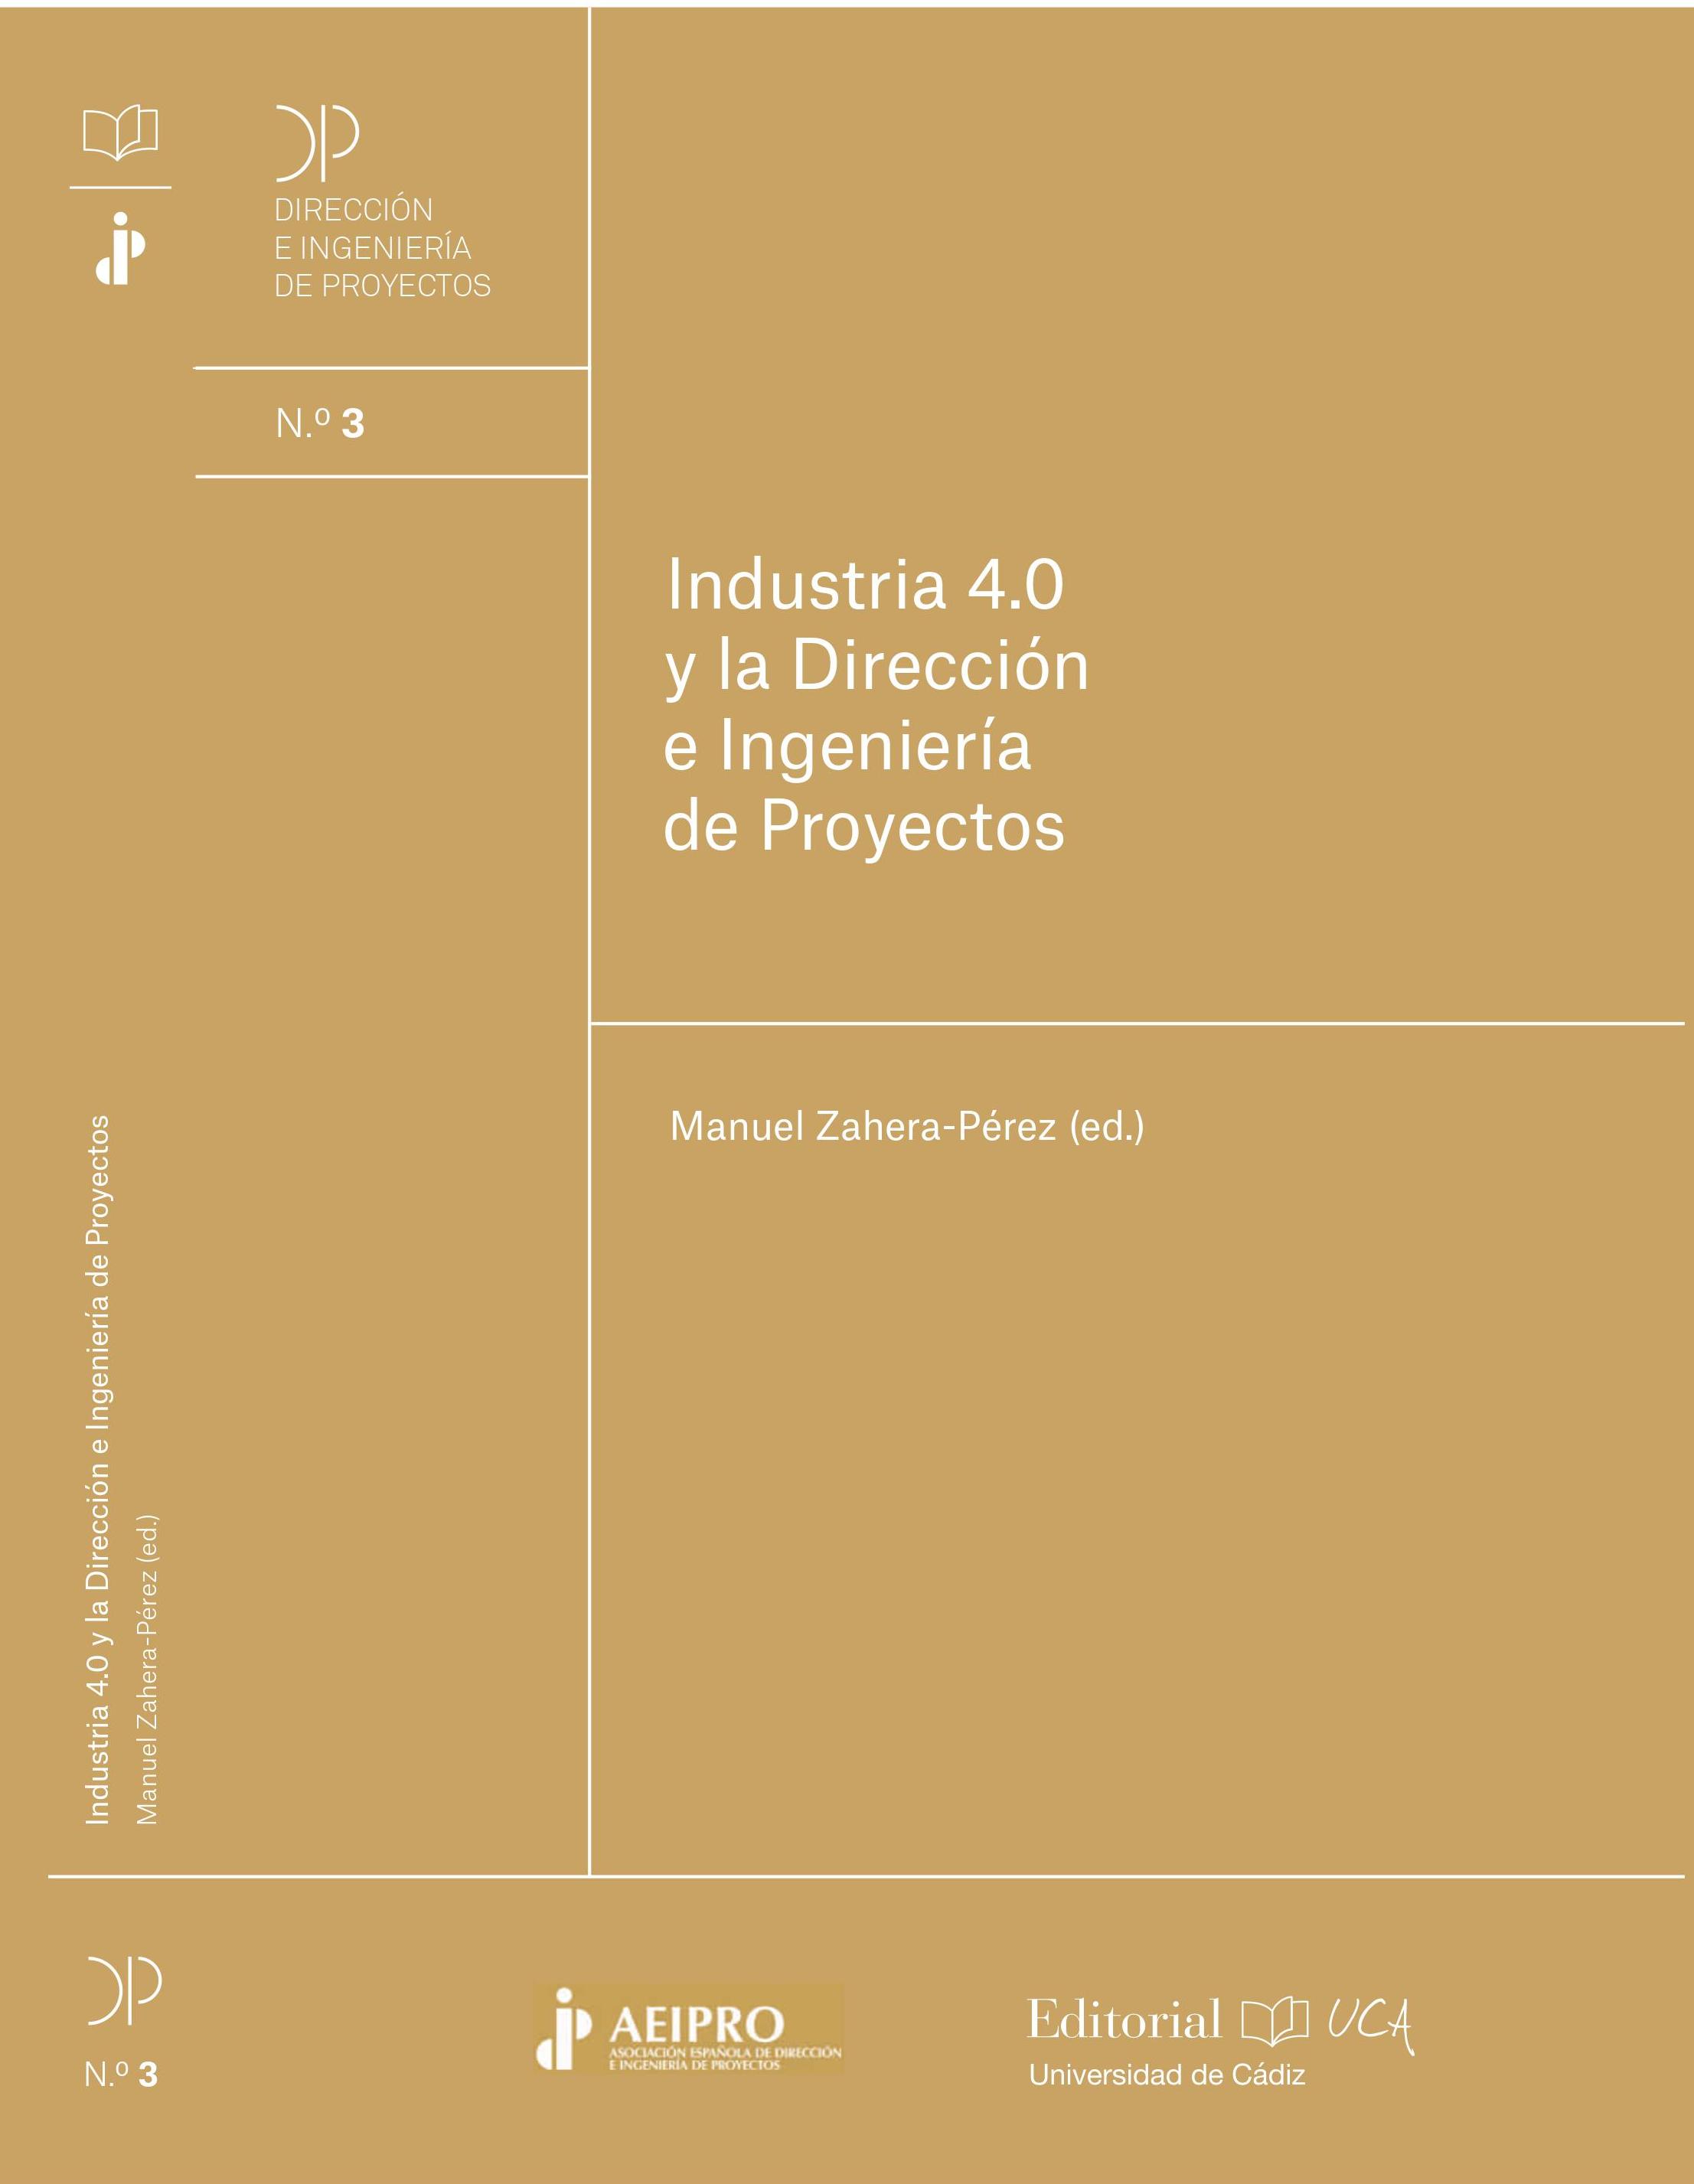 Imagen de portada del libro Industria 4.0 y la dirección e ingeniería de proyectos